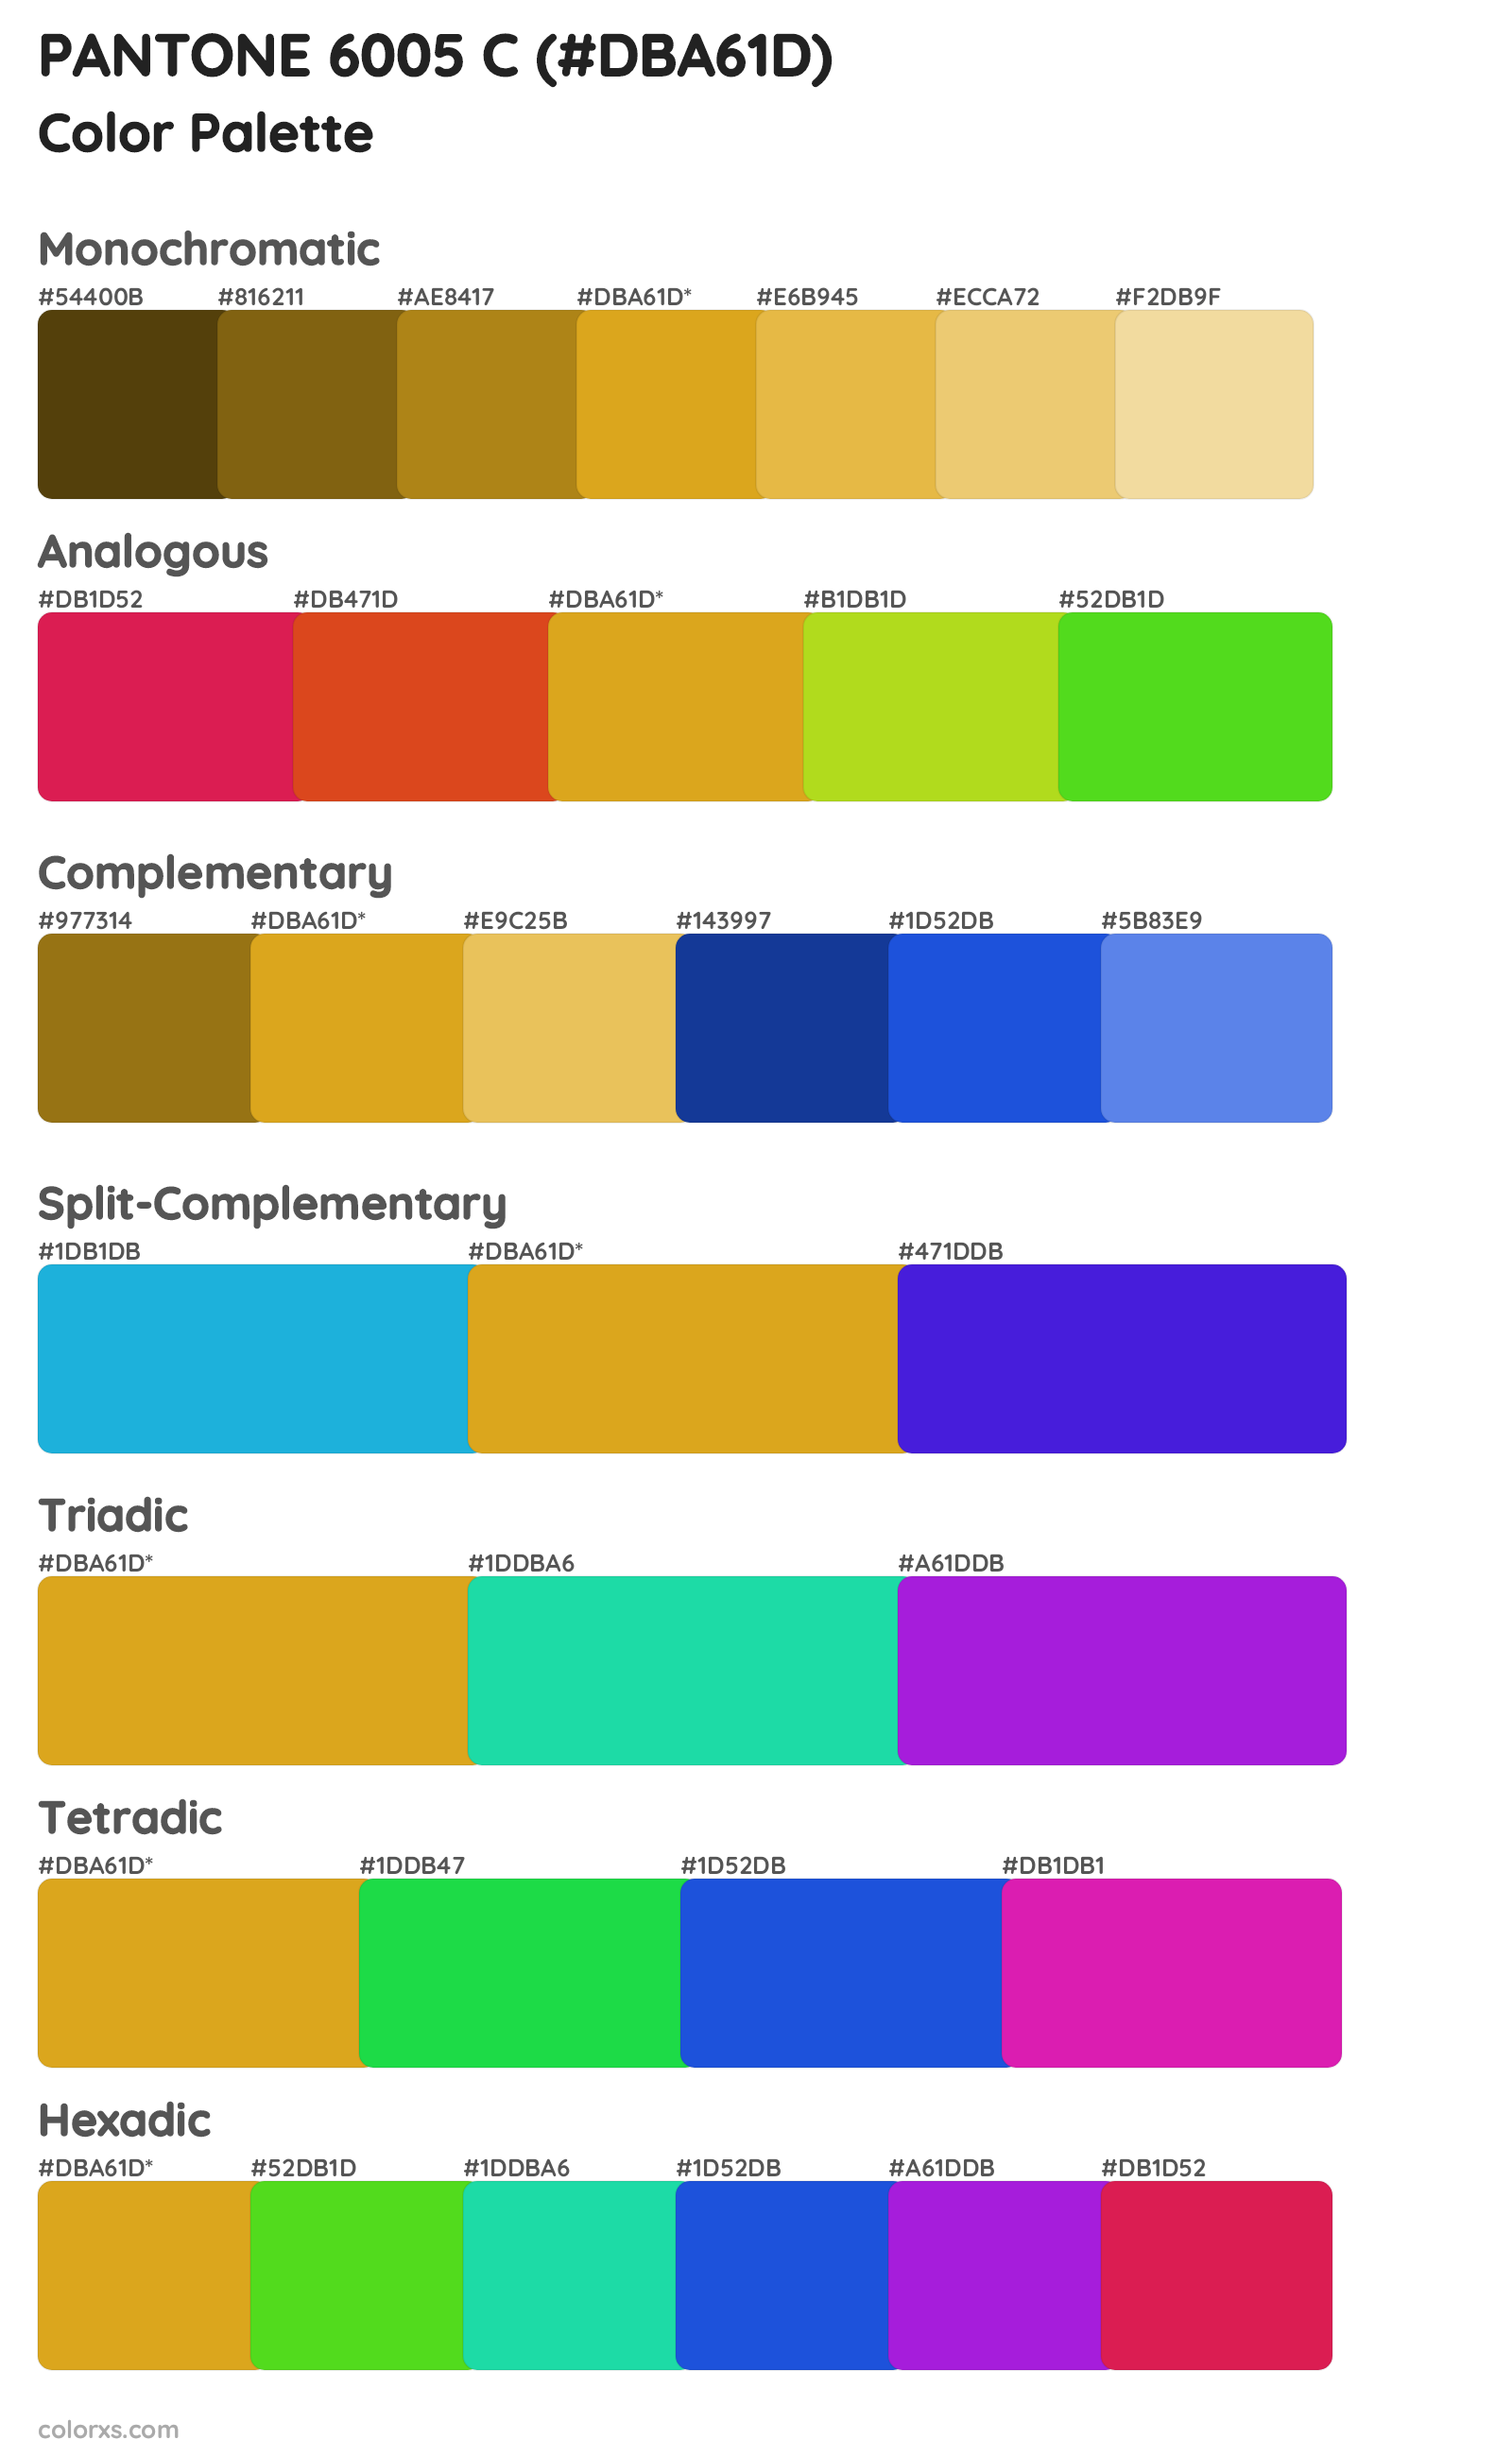 PANTONE 6005 C Color Scheme Palettes